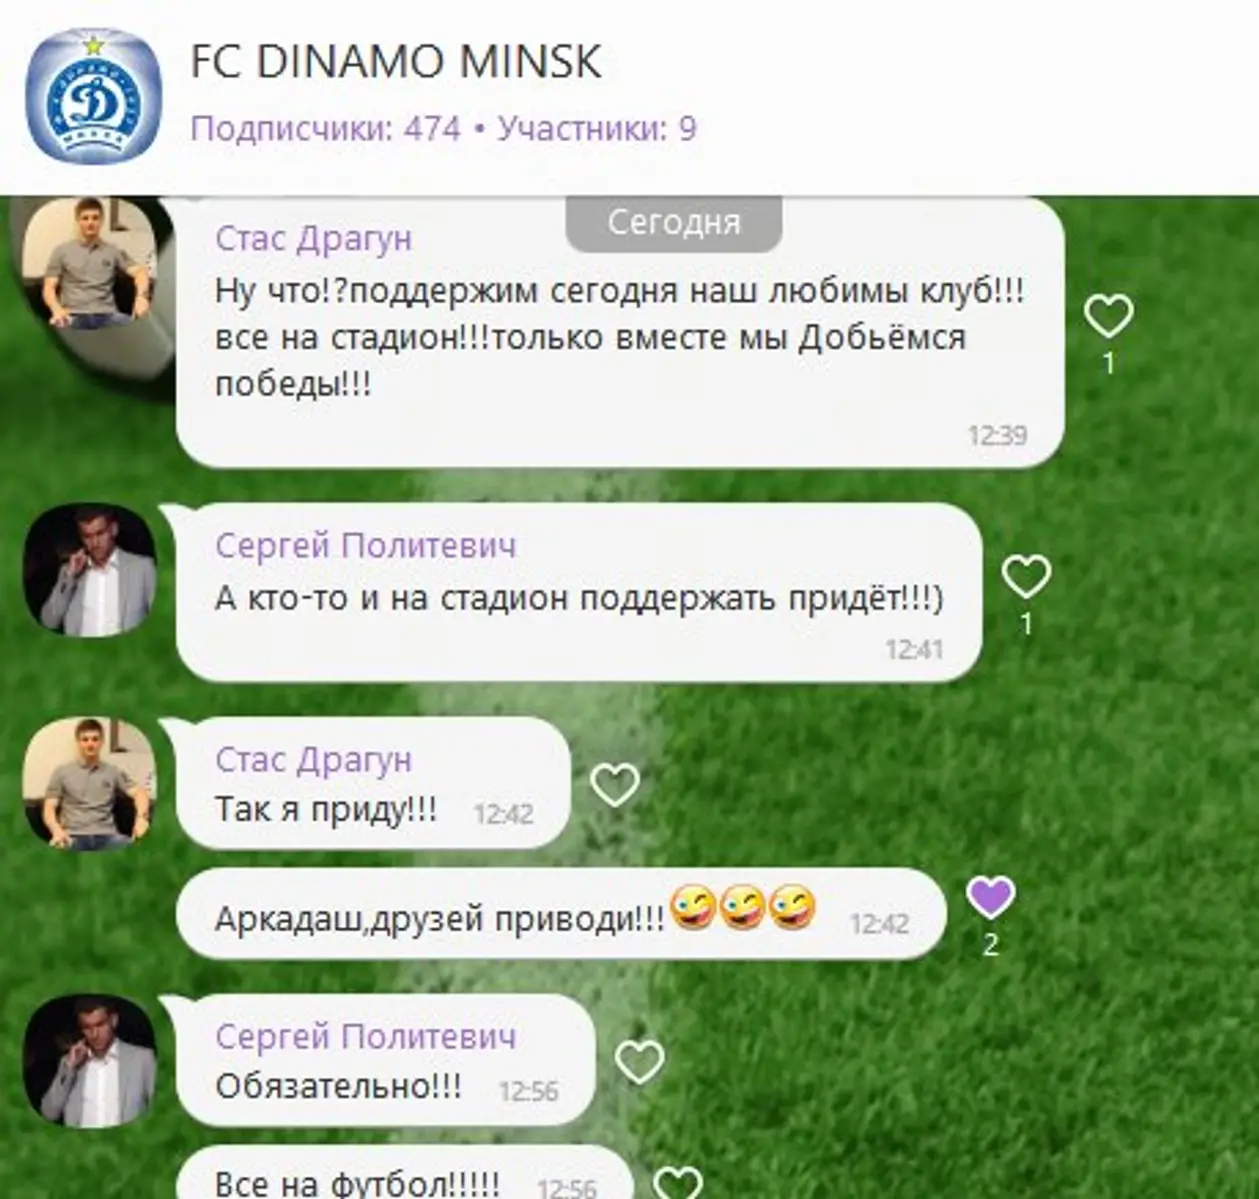 Драгун и Политевич планируют поддержать минское «Динамо» в матче с юрмальским «Спартаком